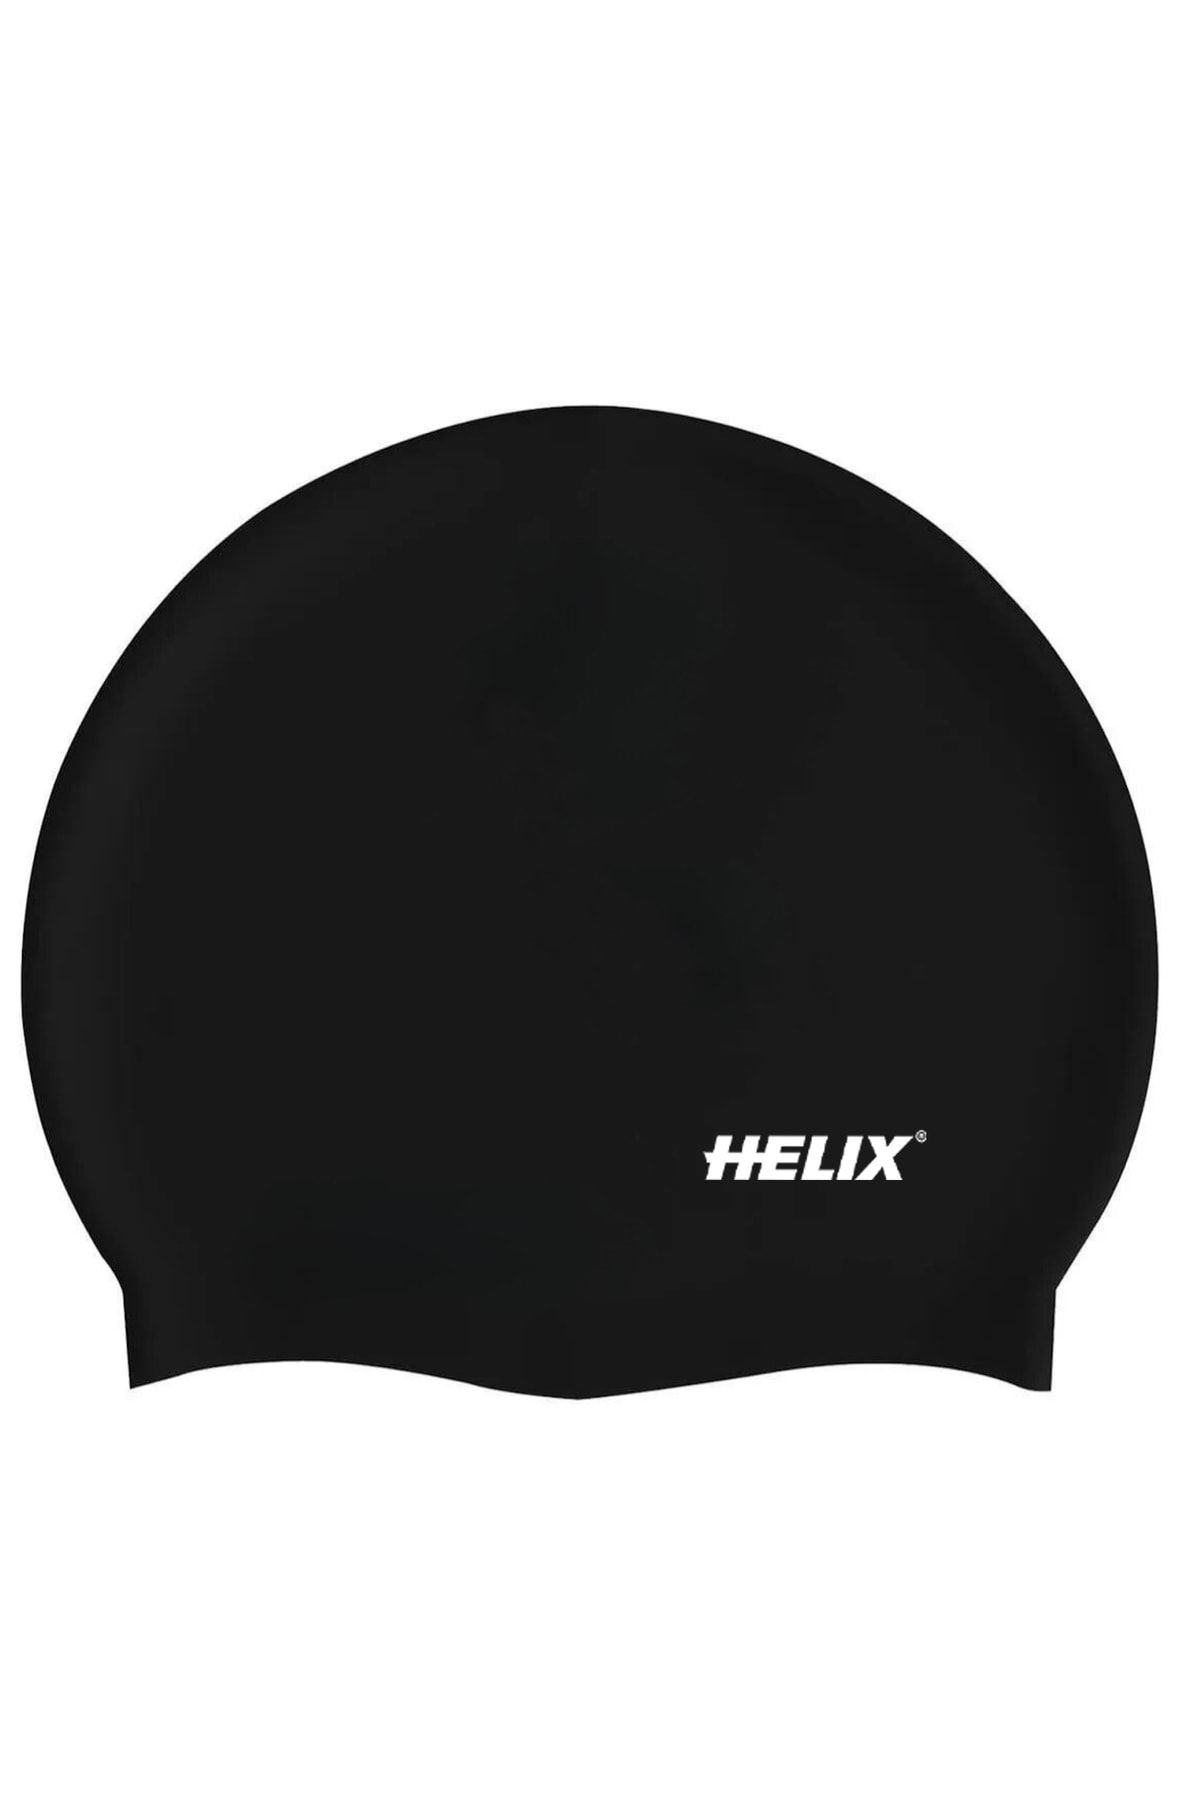 Helix Silikon Yüzücü Bonesi - Siyah